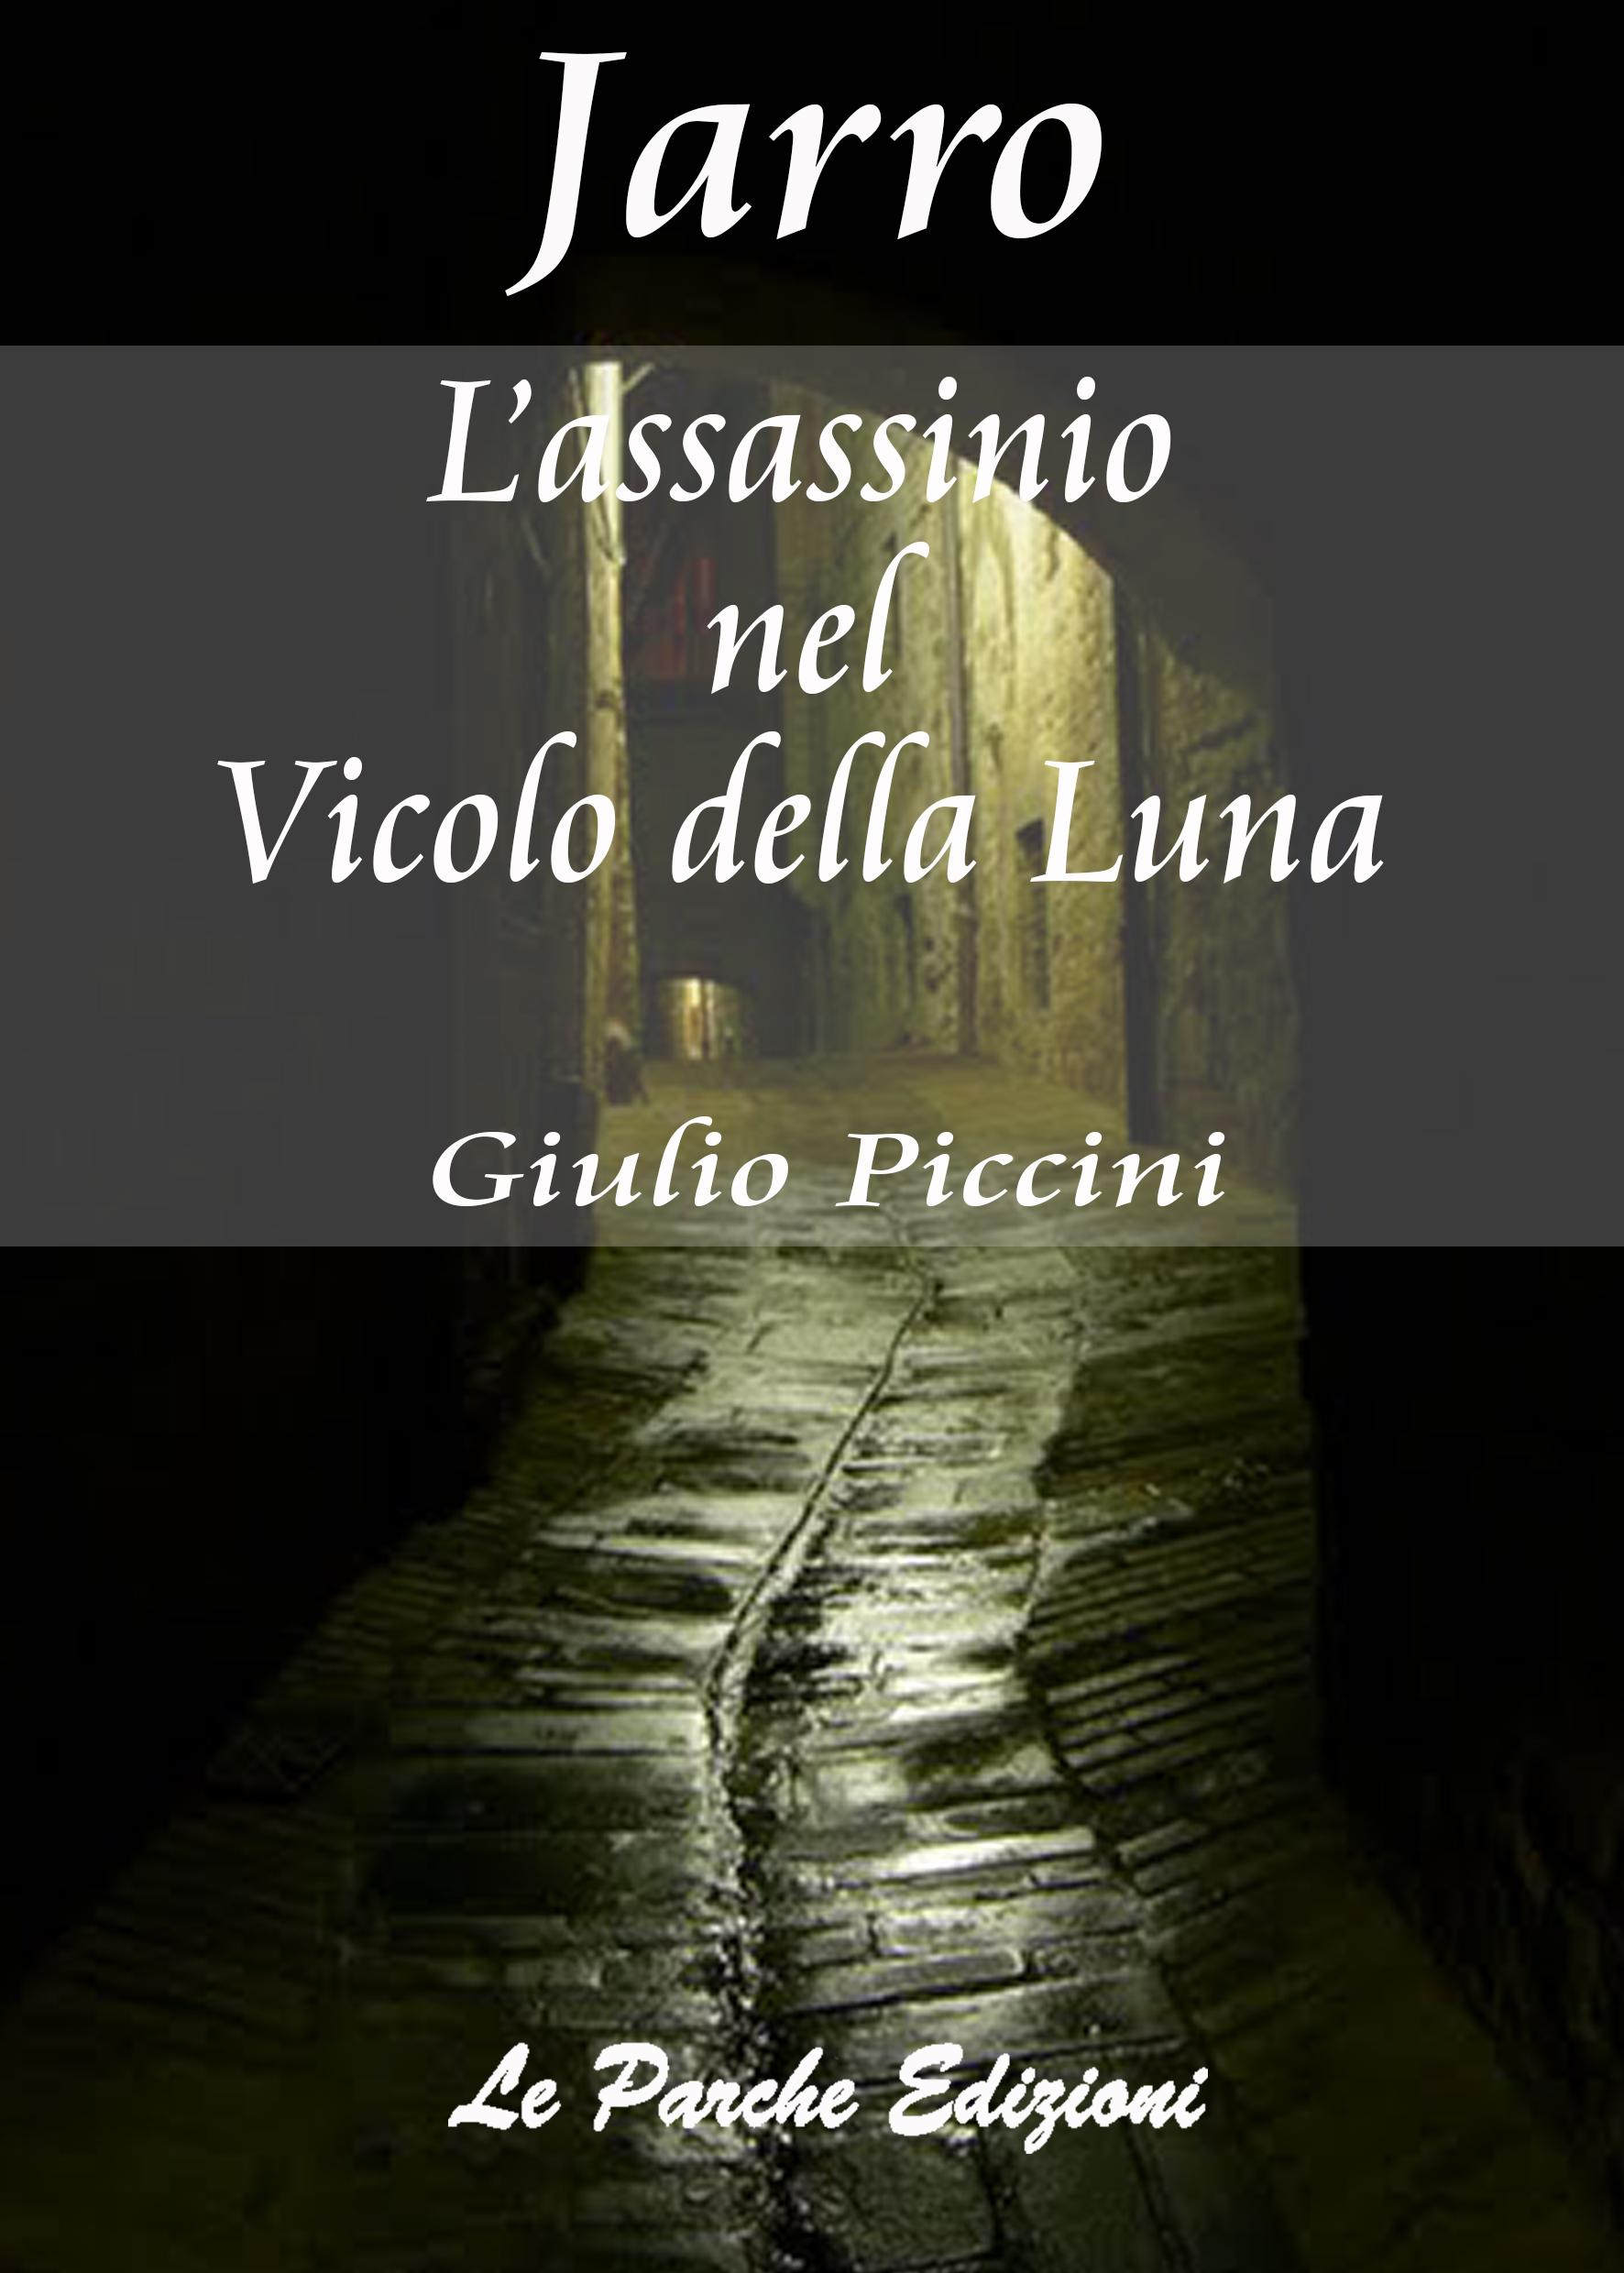 "L'assassinio nel Vicolo della Luna" di Giulio Piccini (Jarro)